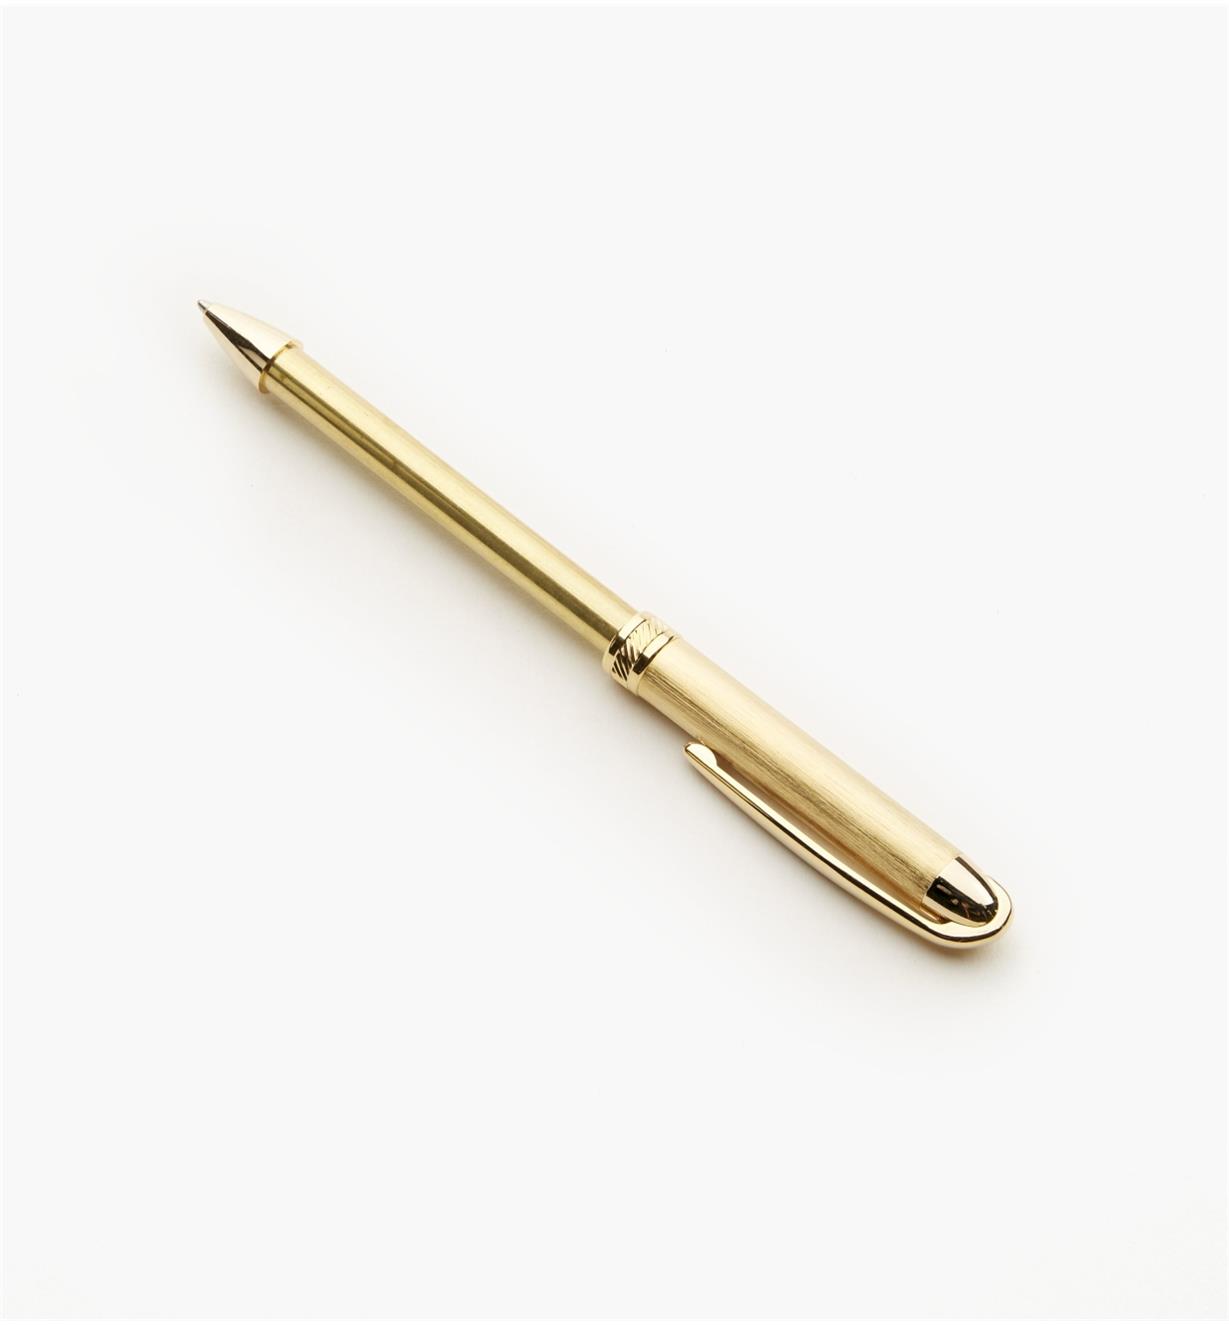 88K8340 - Surfix Duo Ballpoint Pen, Gold